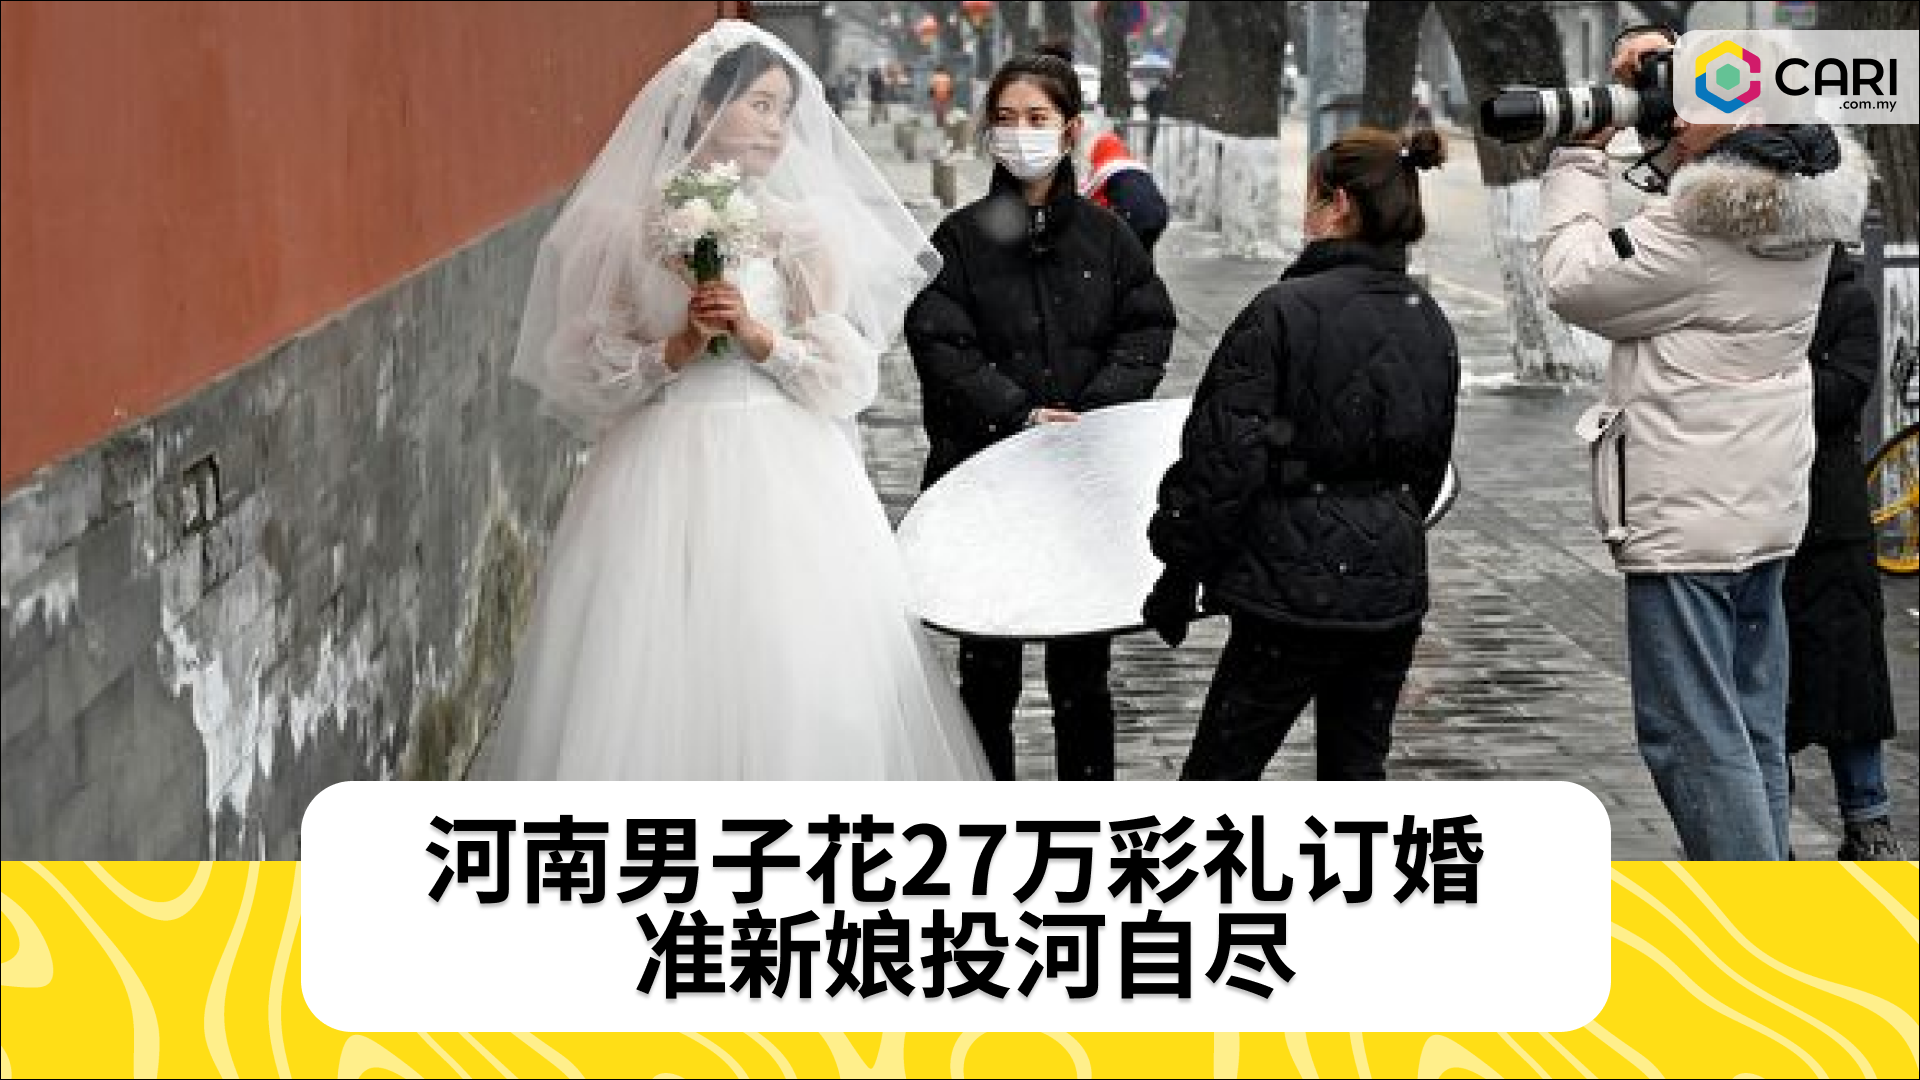 河南男子花27万彩礼订婚 准新娘投河自尽